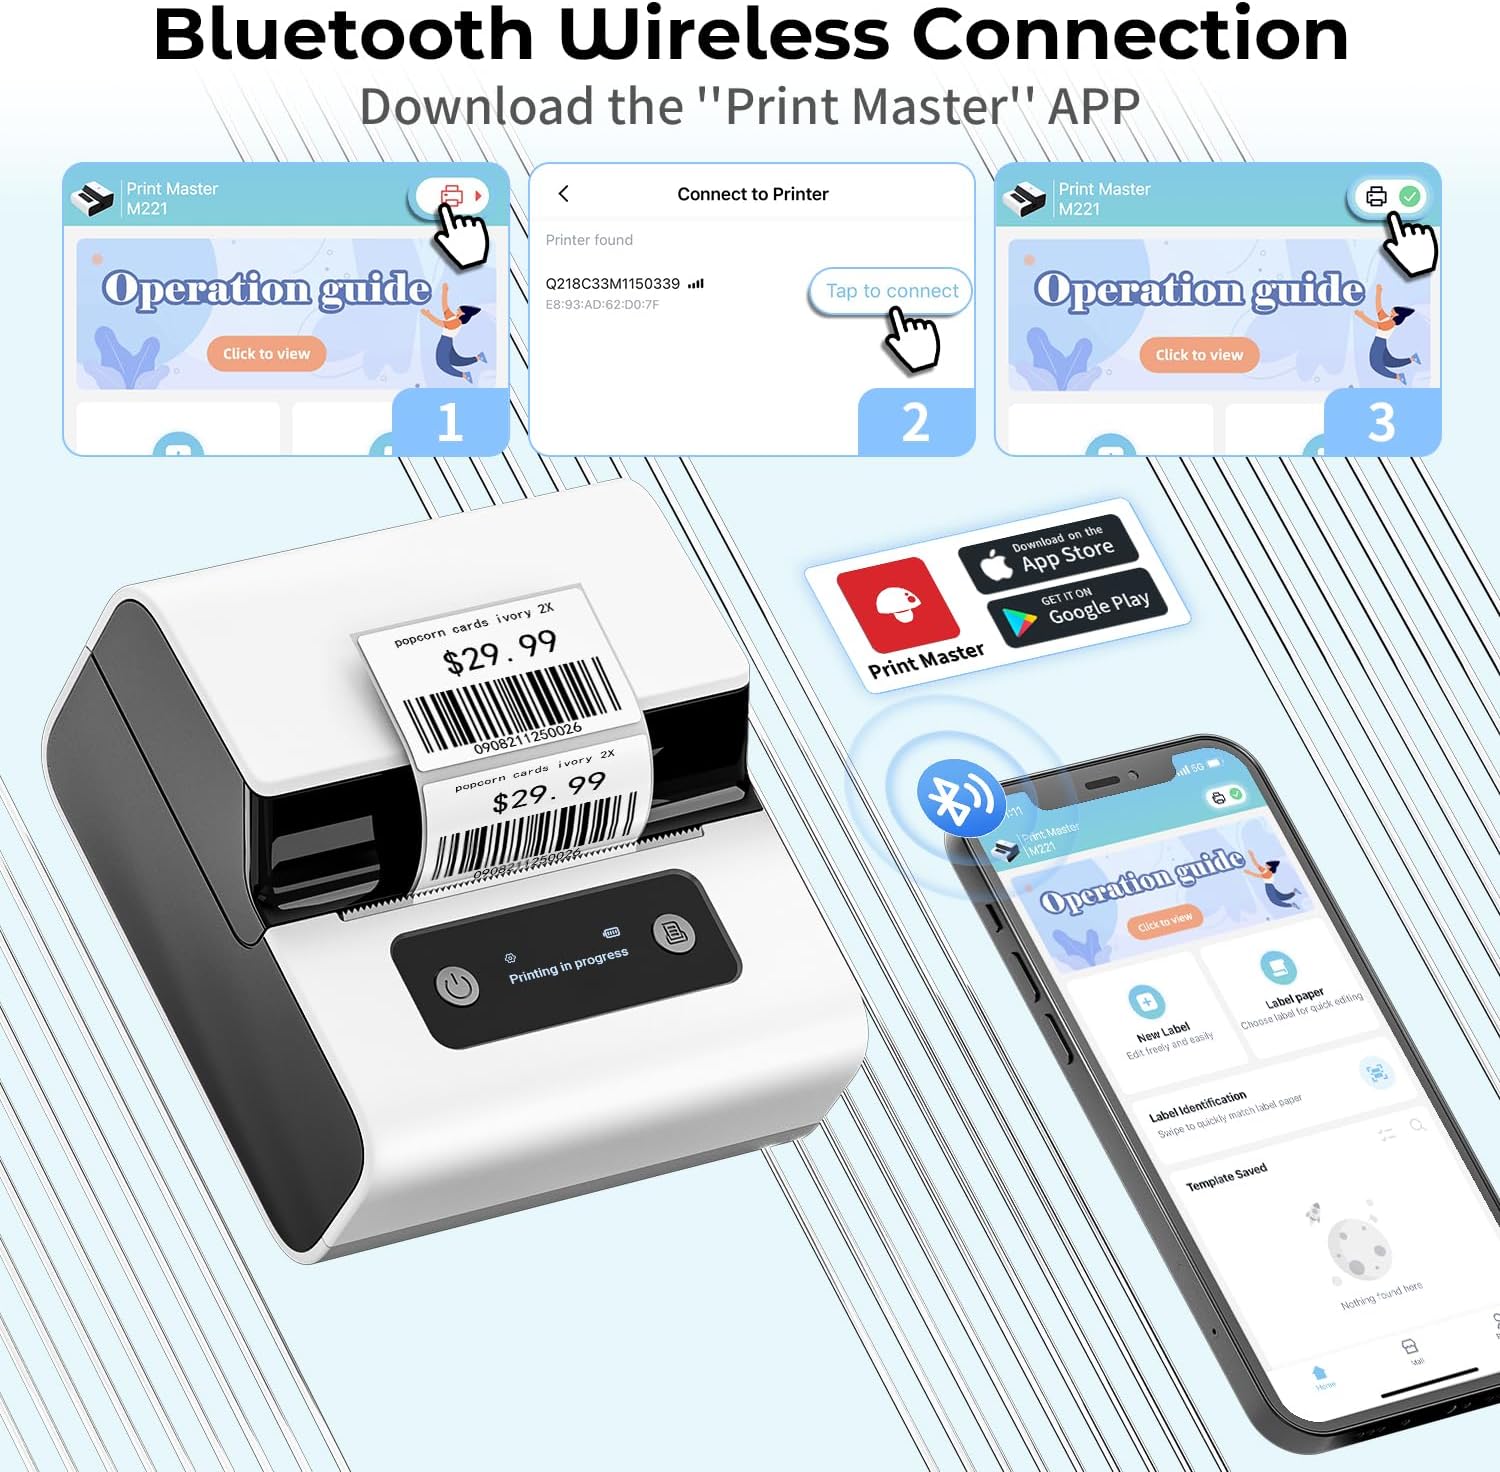 Bluetooth-Thermodrucker M221 Etikettendrucker